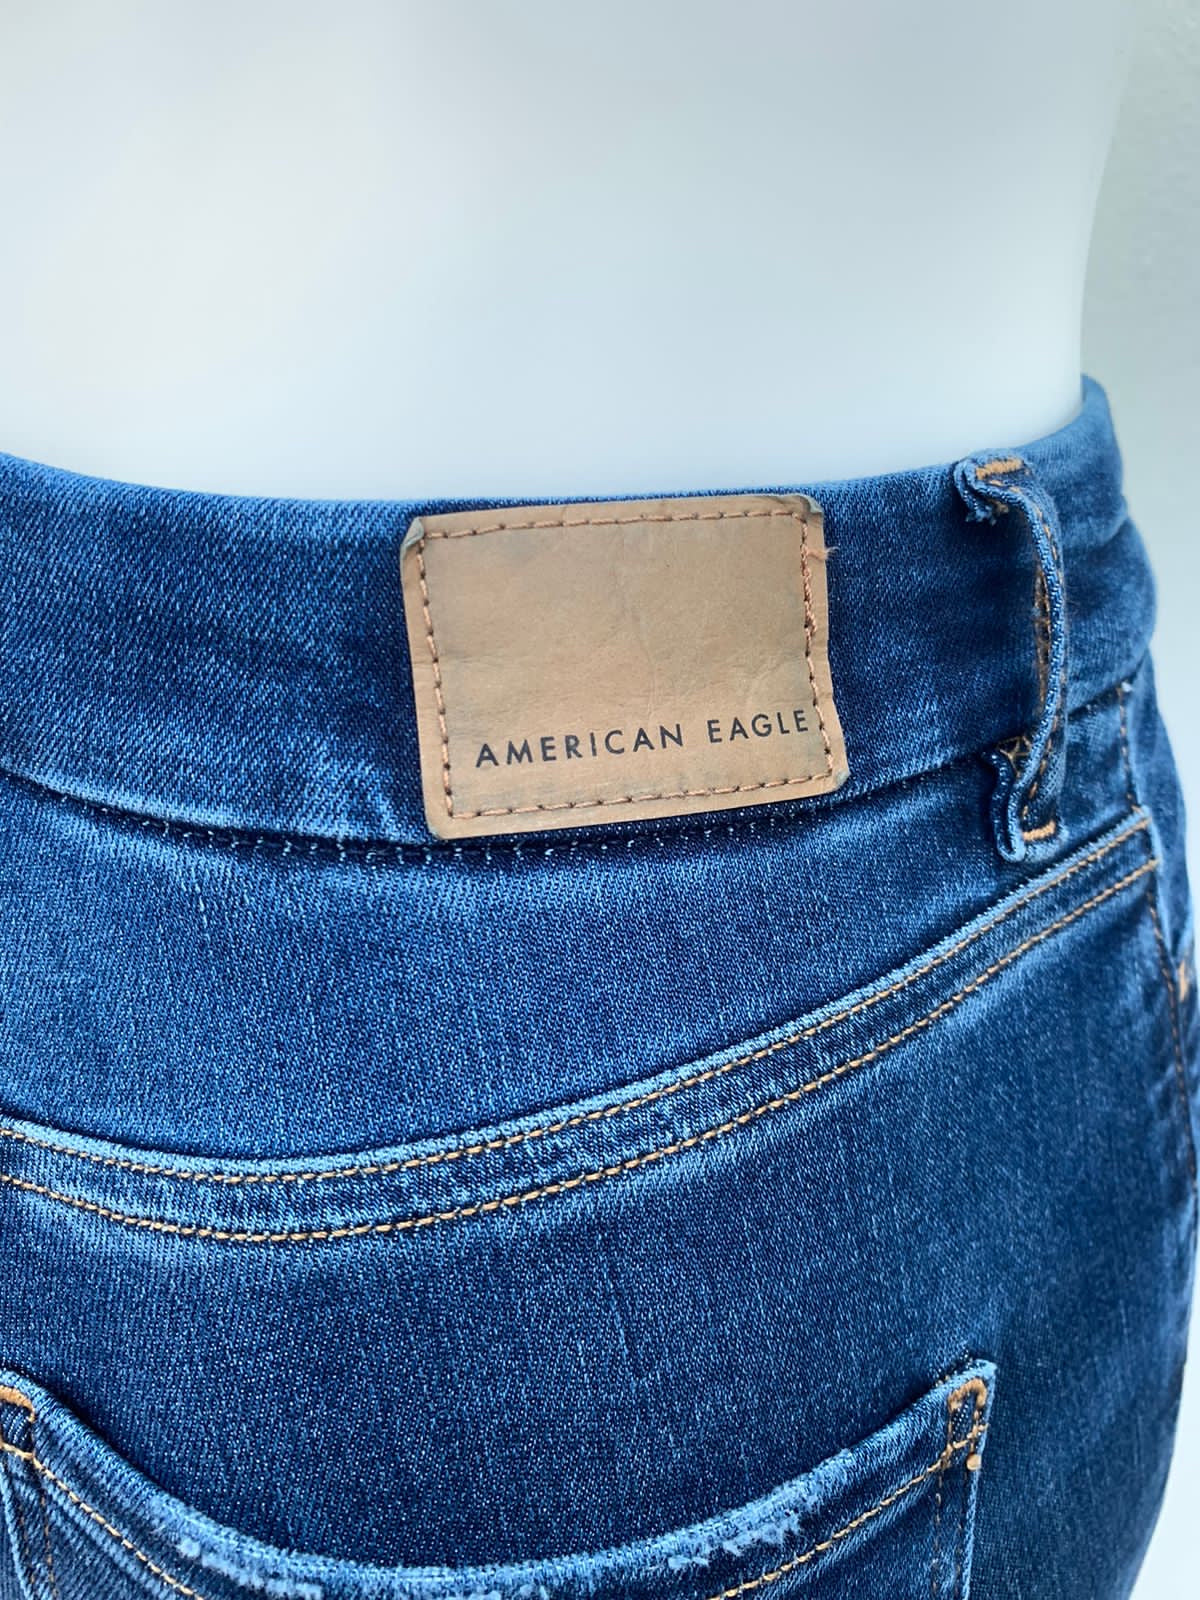 Pantalón Jean American Eagle original azul oscuro liso,  CURVY HI-RISE JEGGING REGULAR. ( diferente con desgastados en los bolsillos.